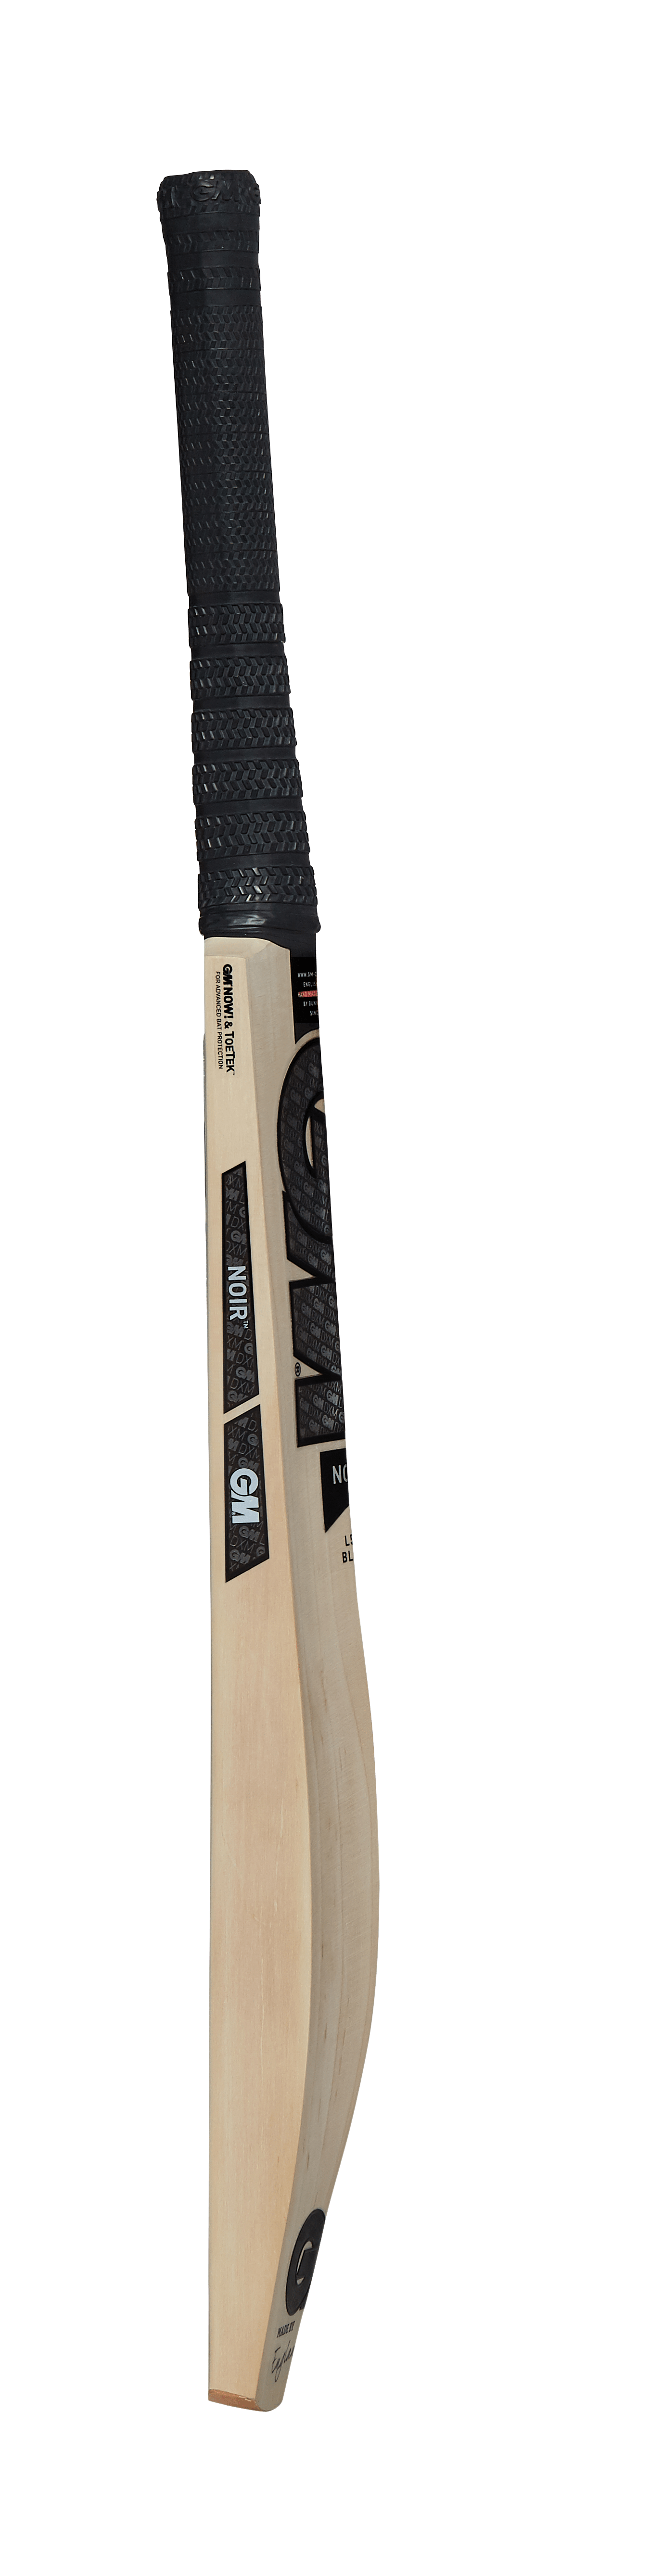 Gunn & Moore Cricket Bats SH / 2.9 GM Bat Noir Dxm Original Ttnow